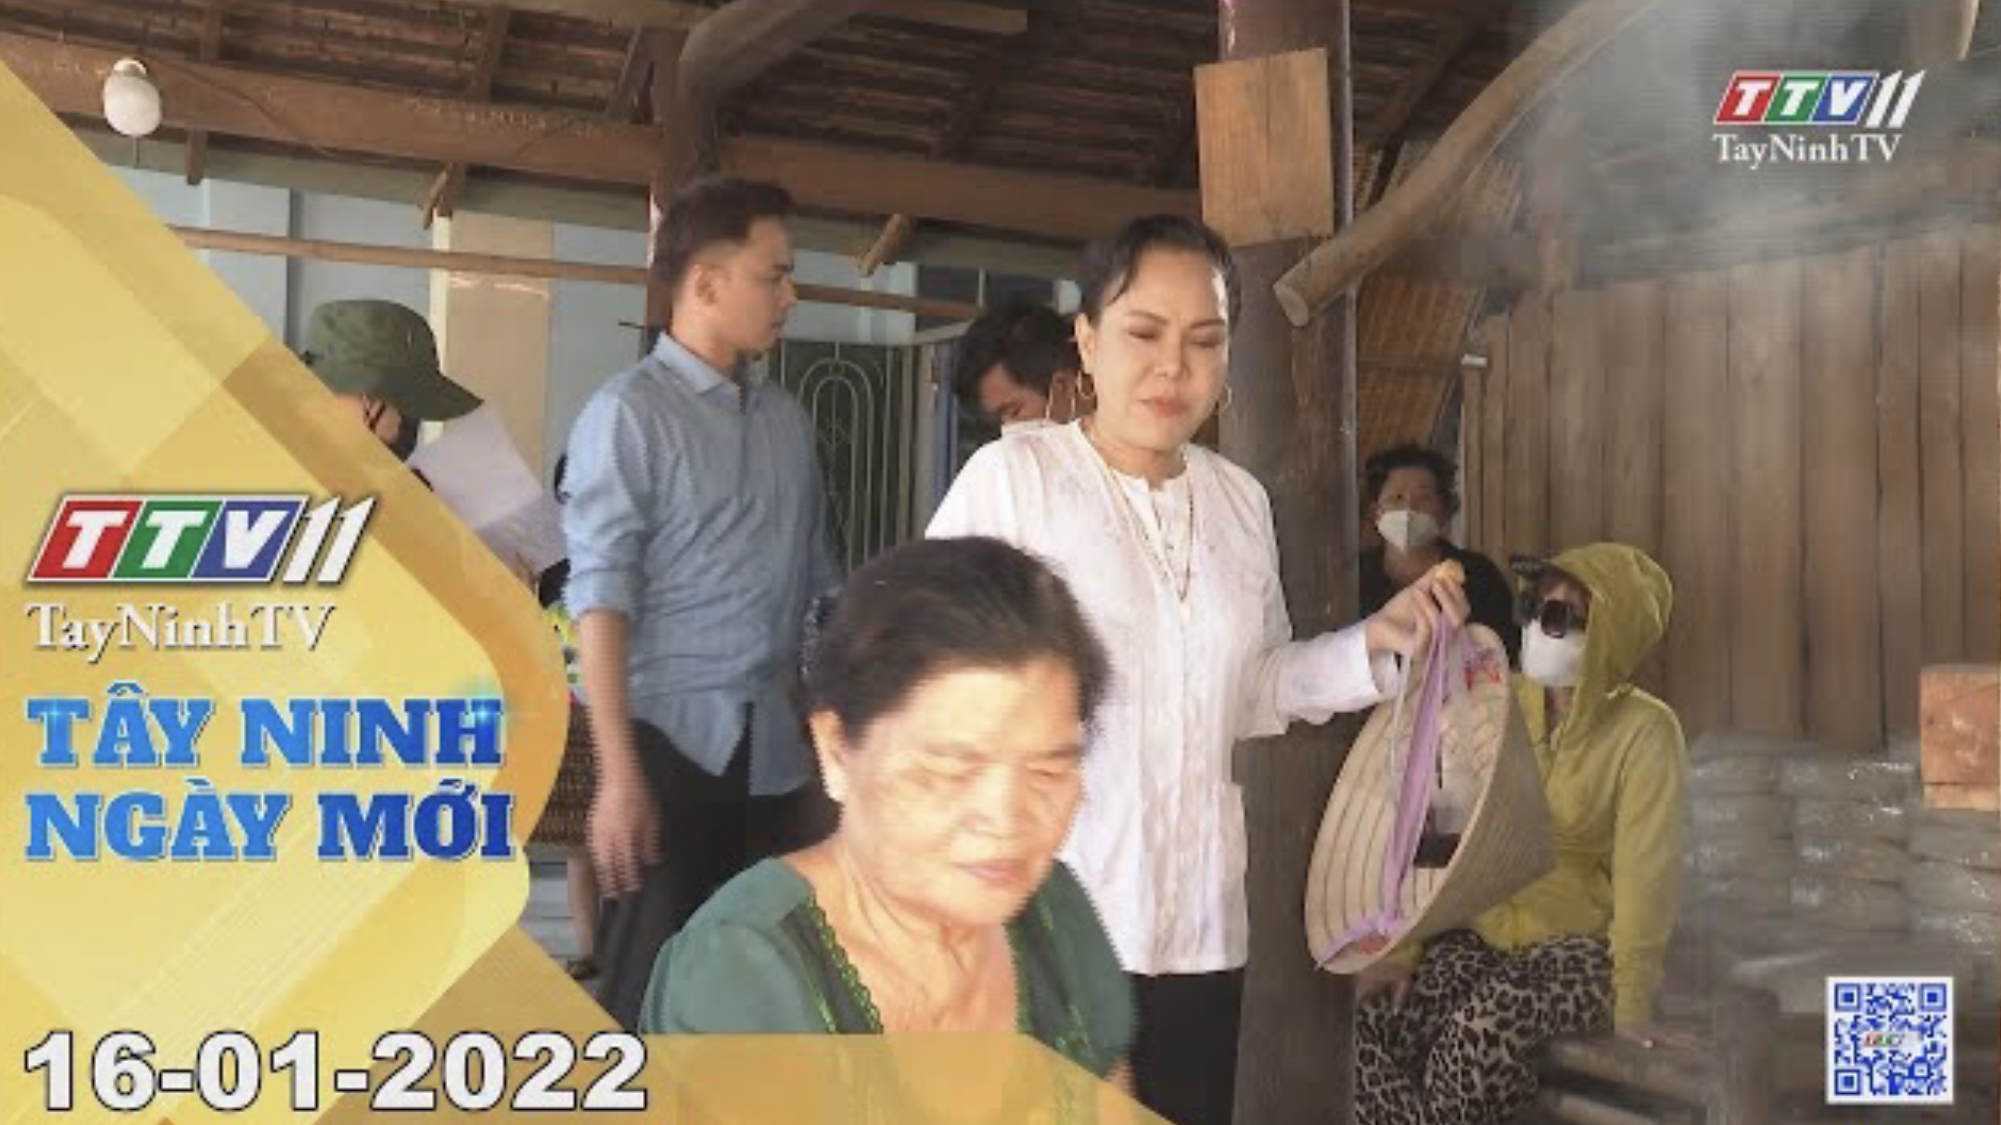 TÂY NINH NGÀY MỚI 16/01/2022 | Tin tức hôm nay | TayNinhTV